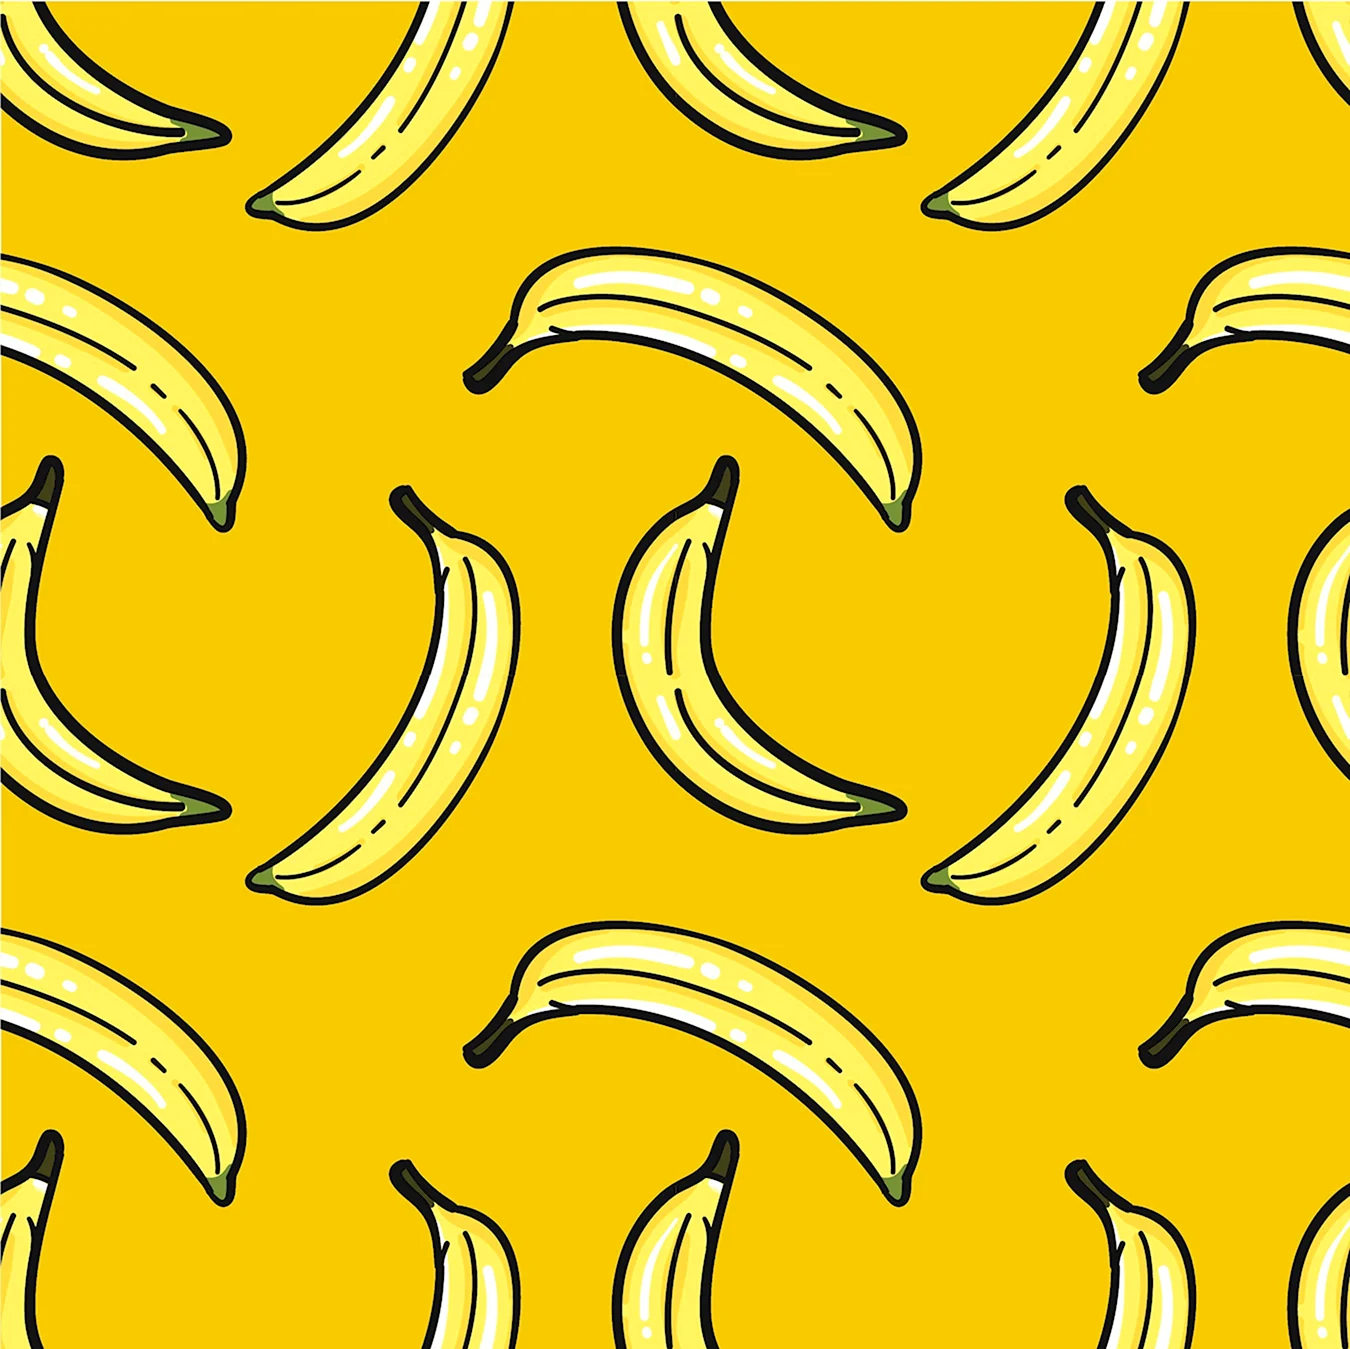 Бананы фон. Для срисовки